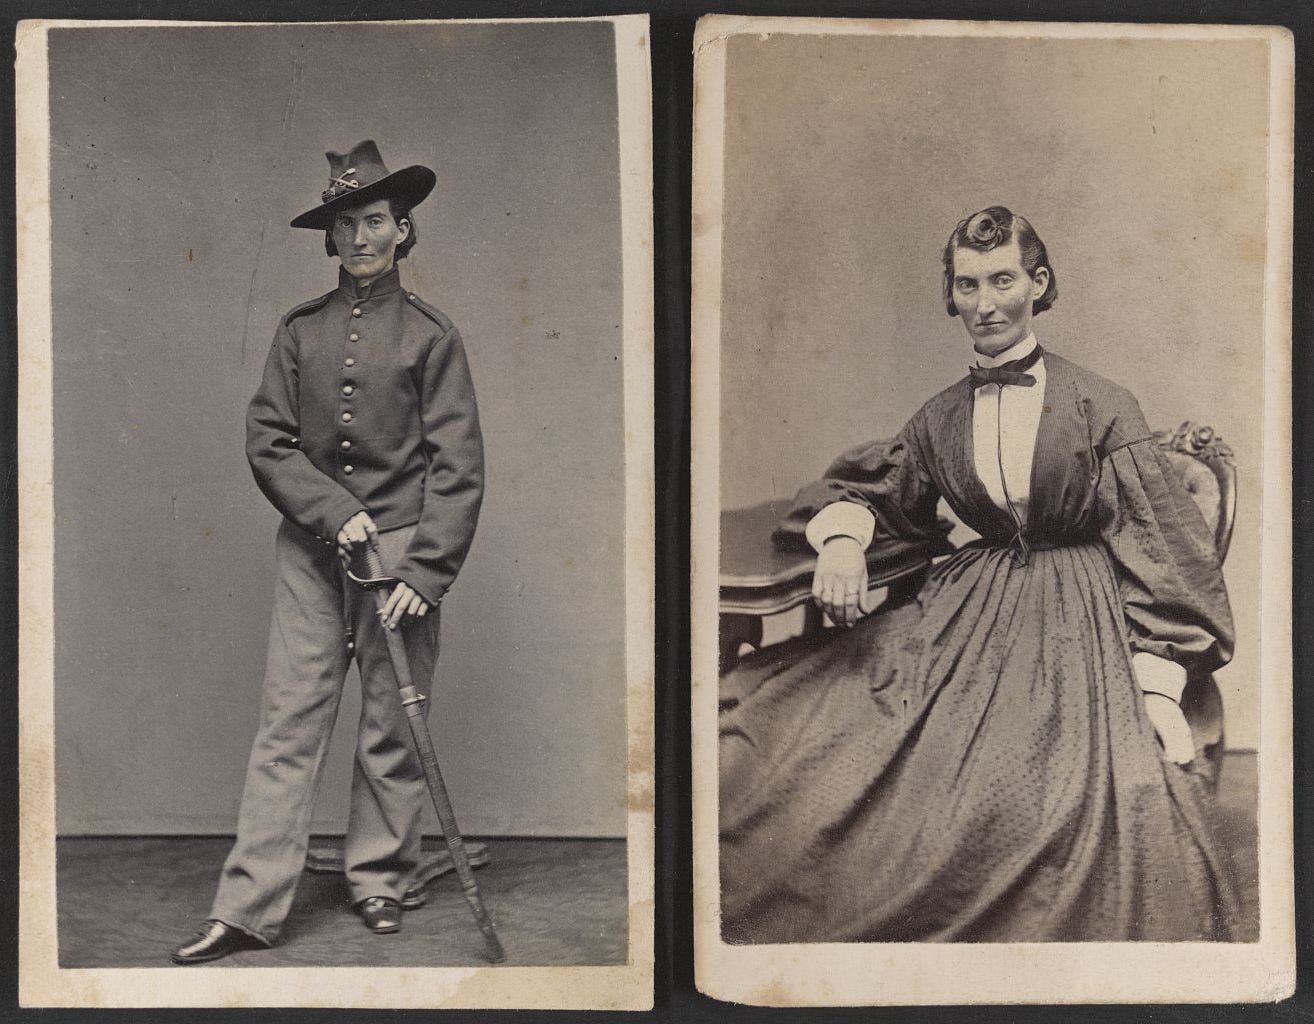 Meet The Heroic Cross Dressing Women Warriors Of The Civil War